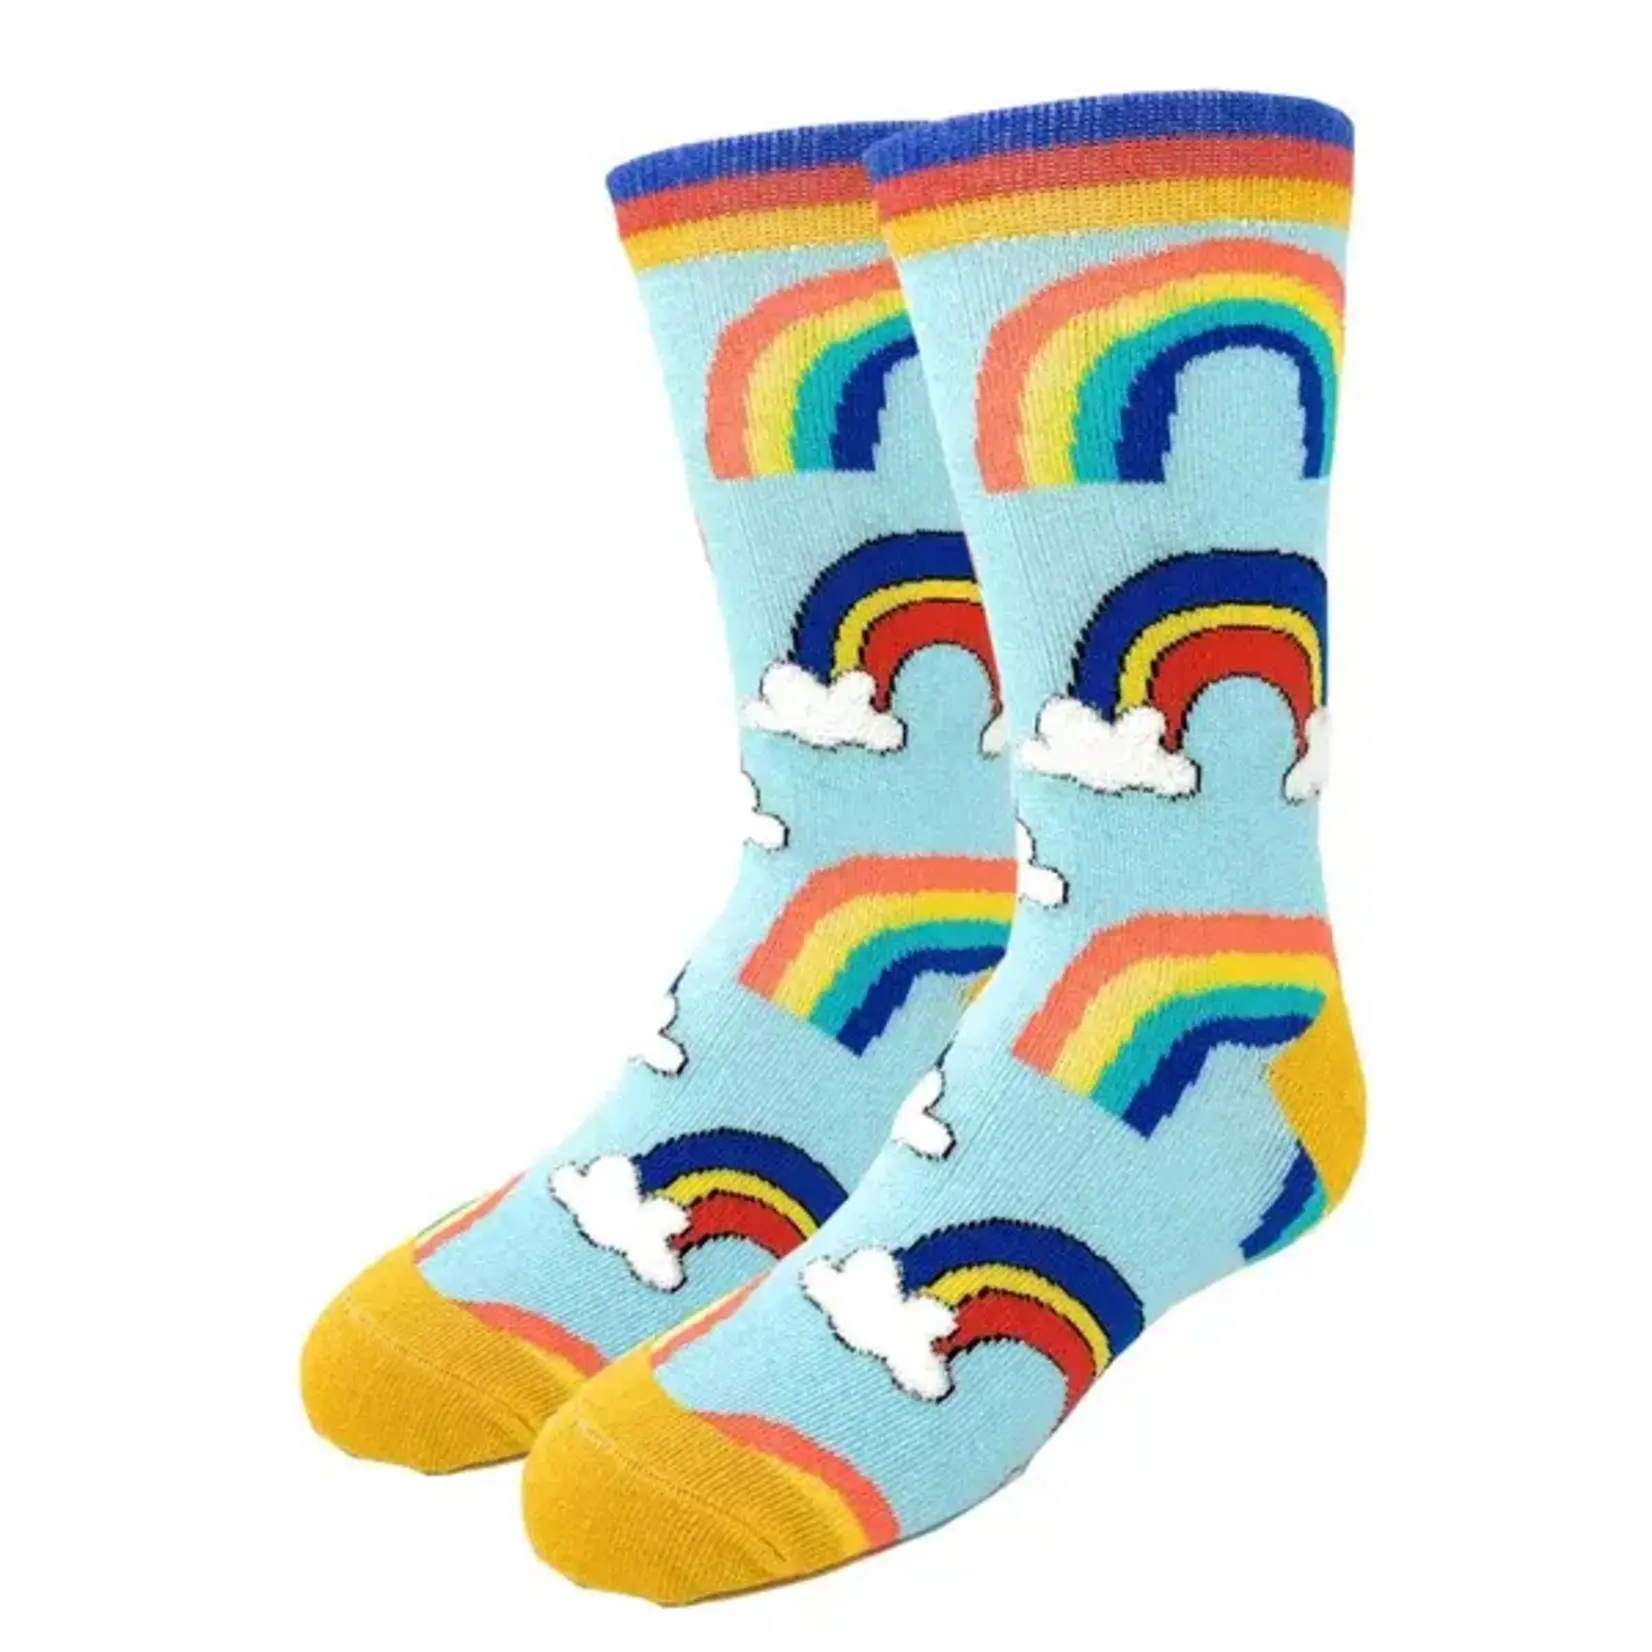 Socks (Kids) - Rainbows